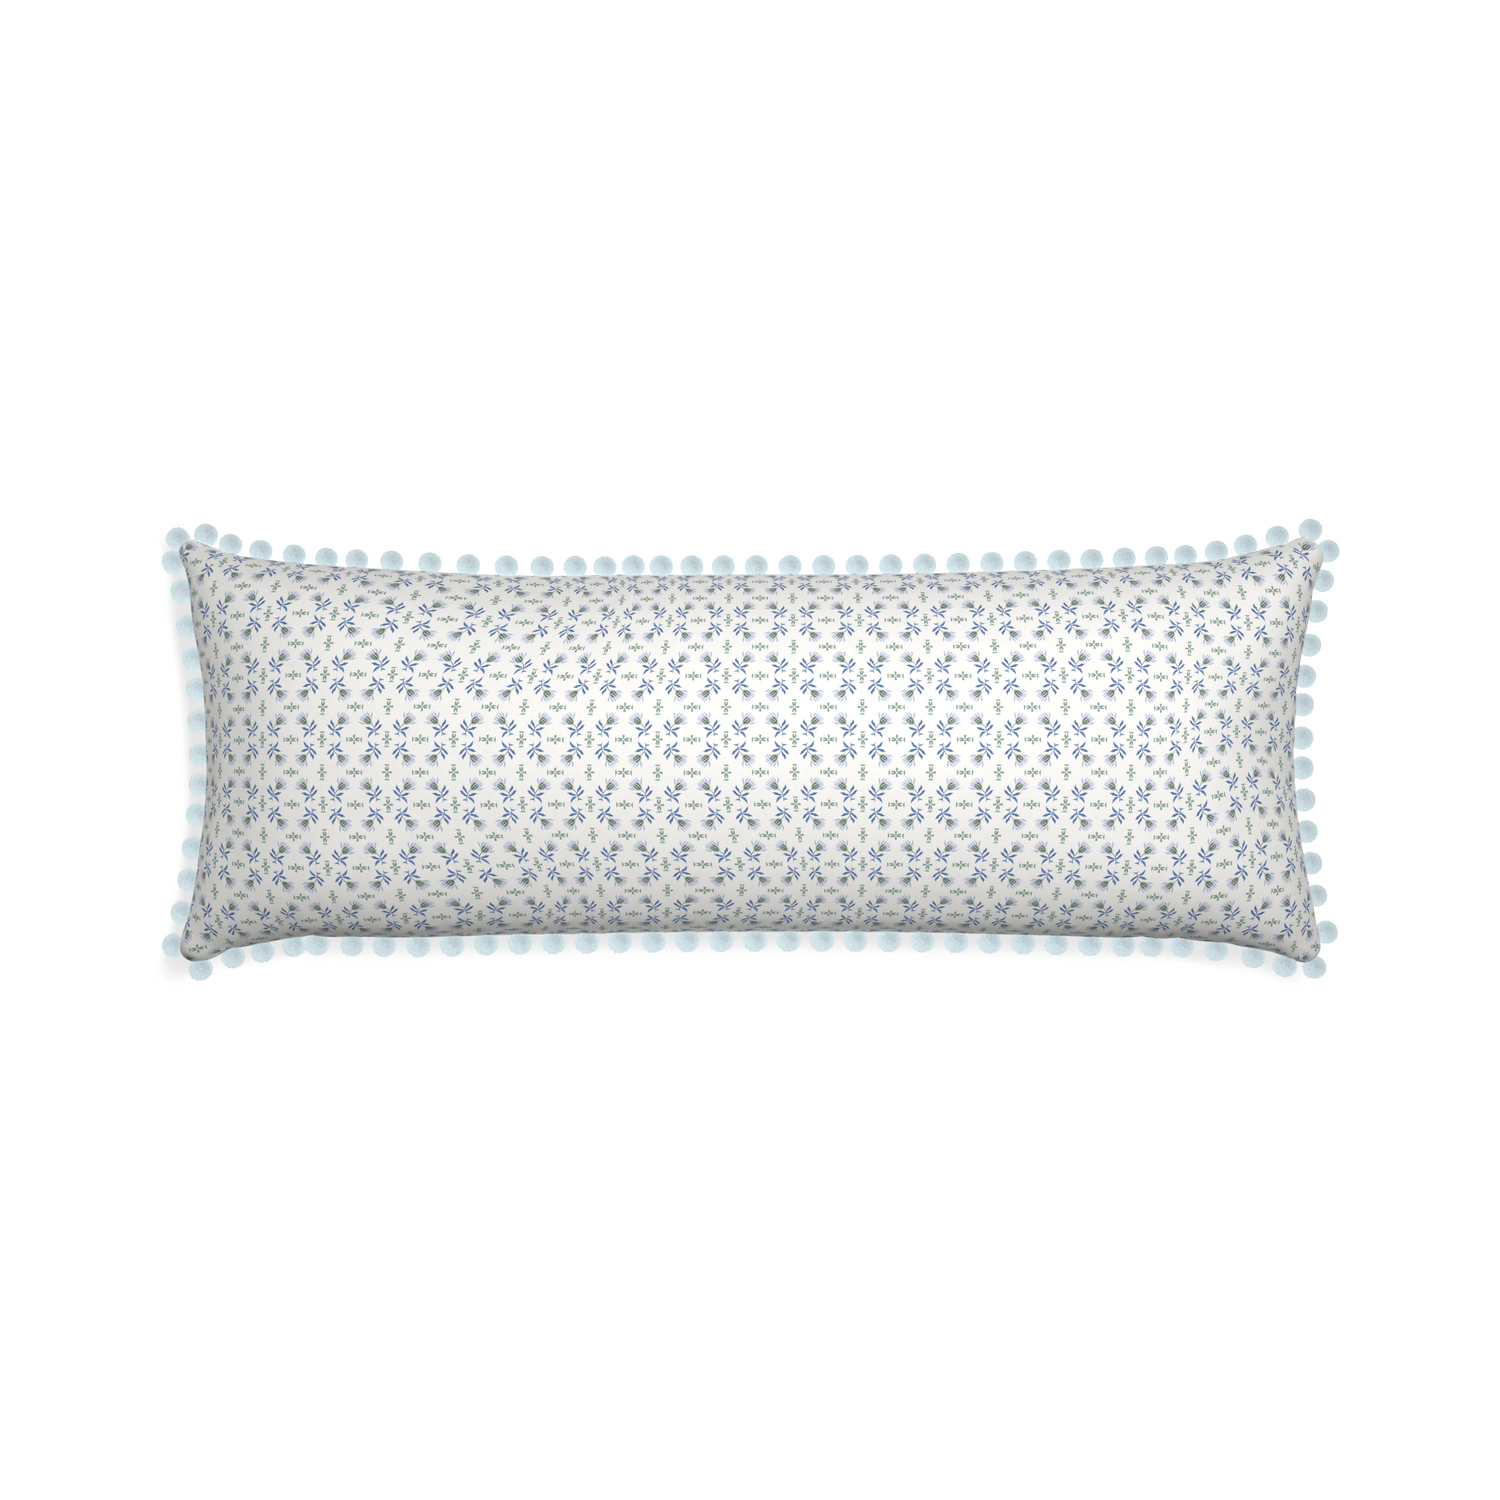 Xl-lumbar lee custom pillow with powder pom pom on white background